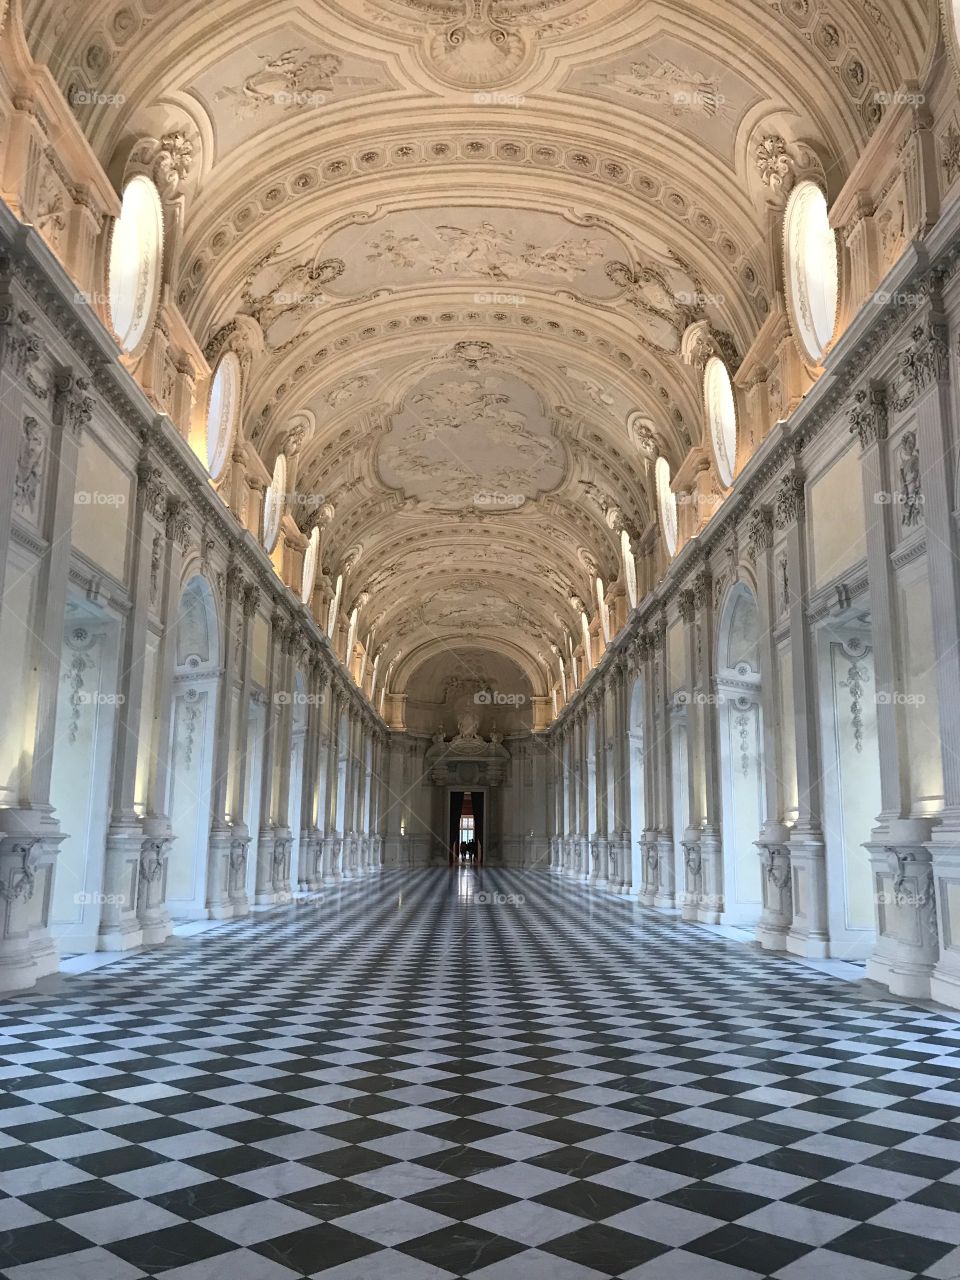 Interior of the Reggia di Venaria, Torino, Italy